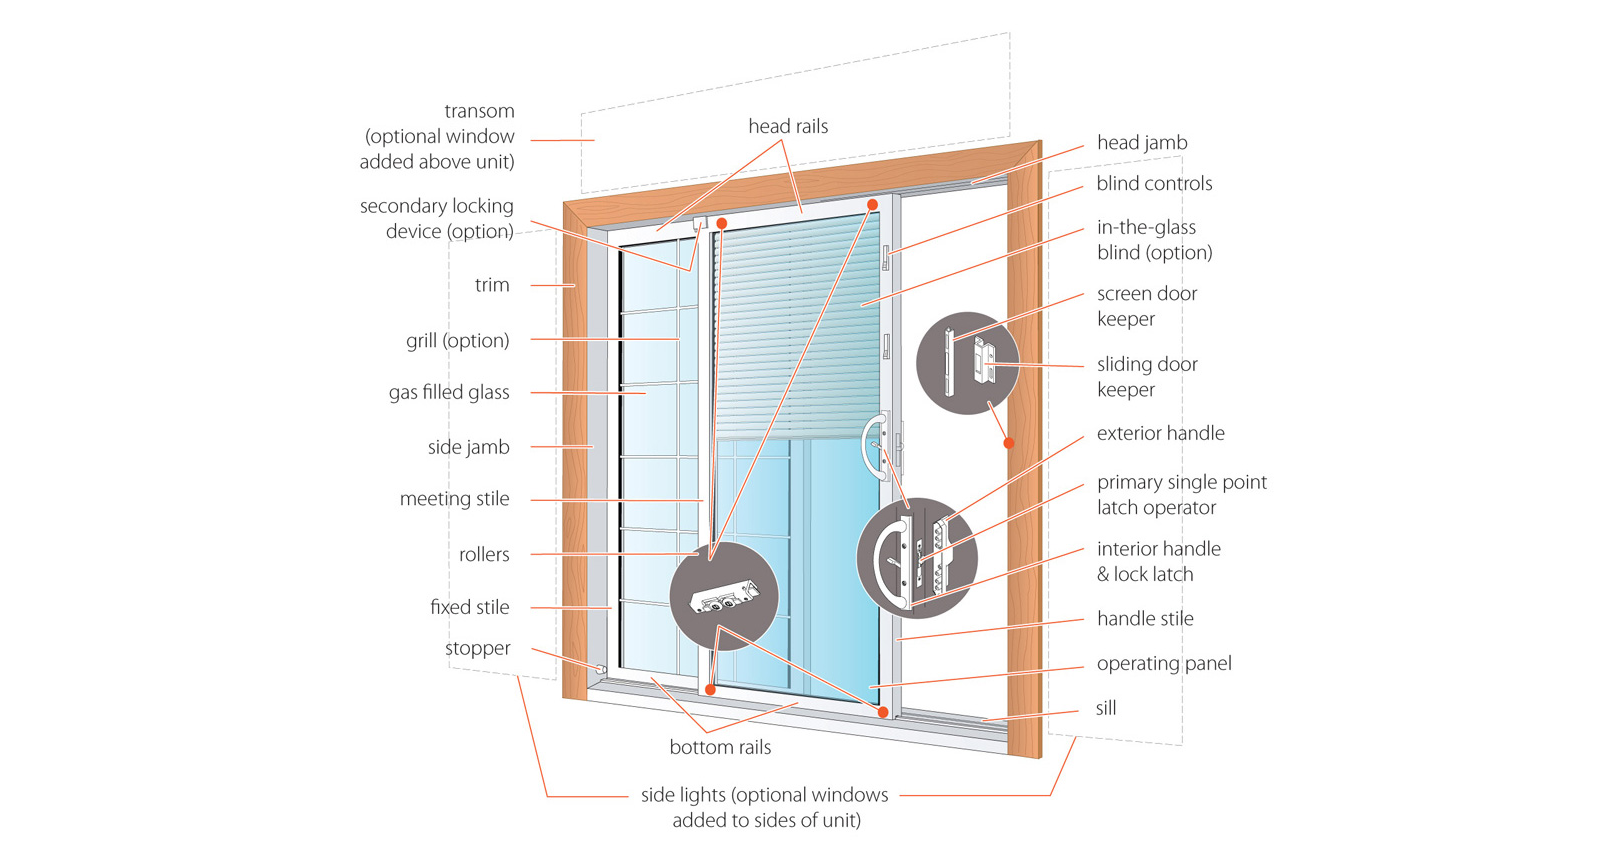 Anatomy of vinyl patio sliding door